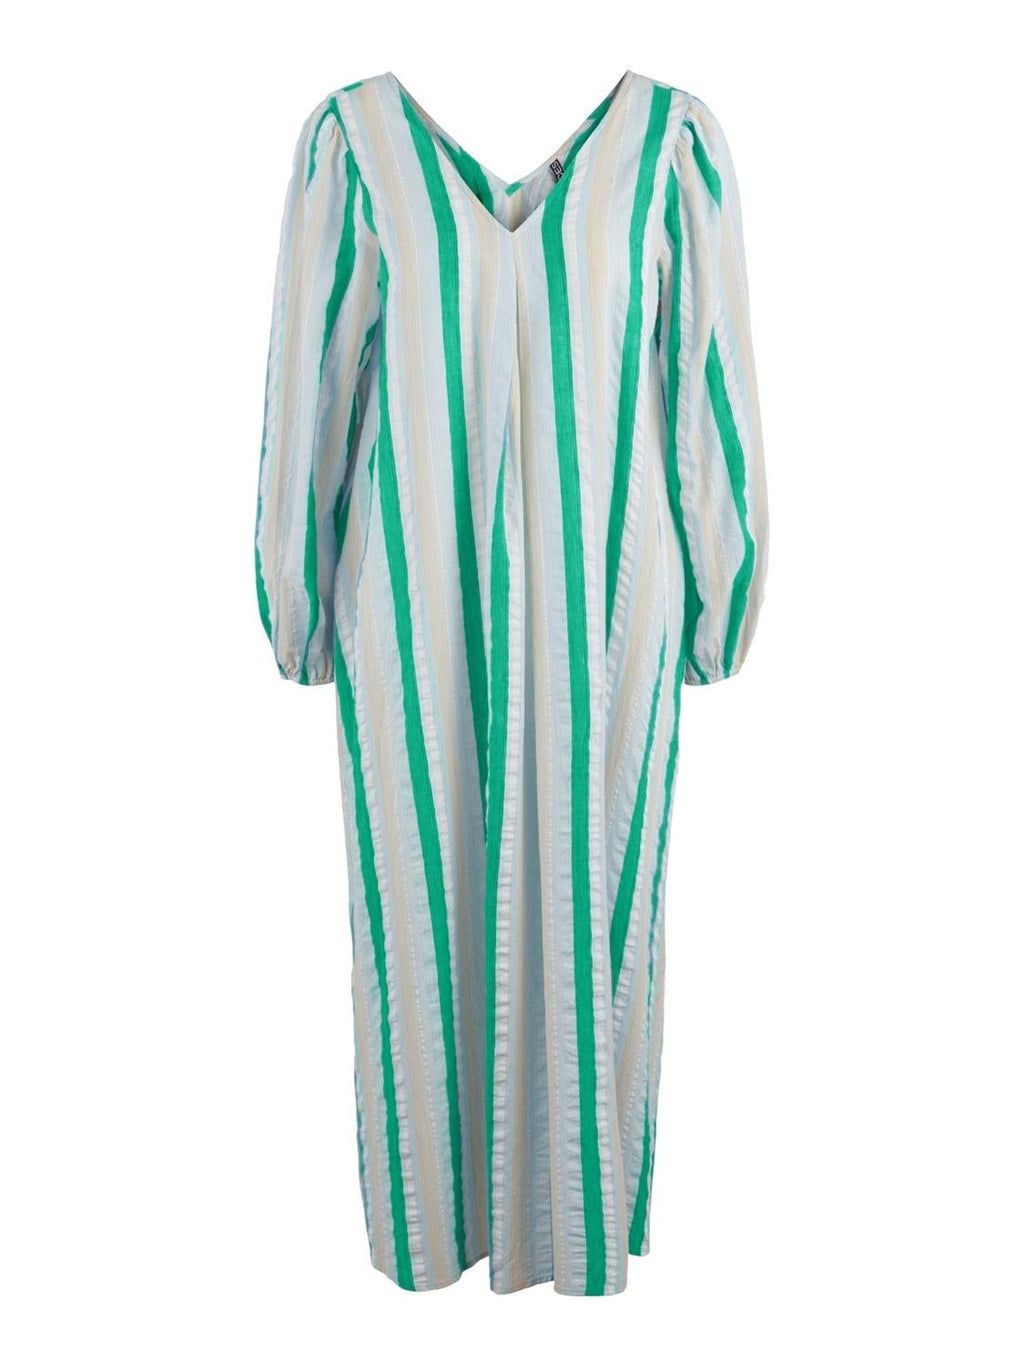 Fursa Midi Dress - Simply Green